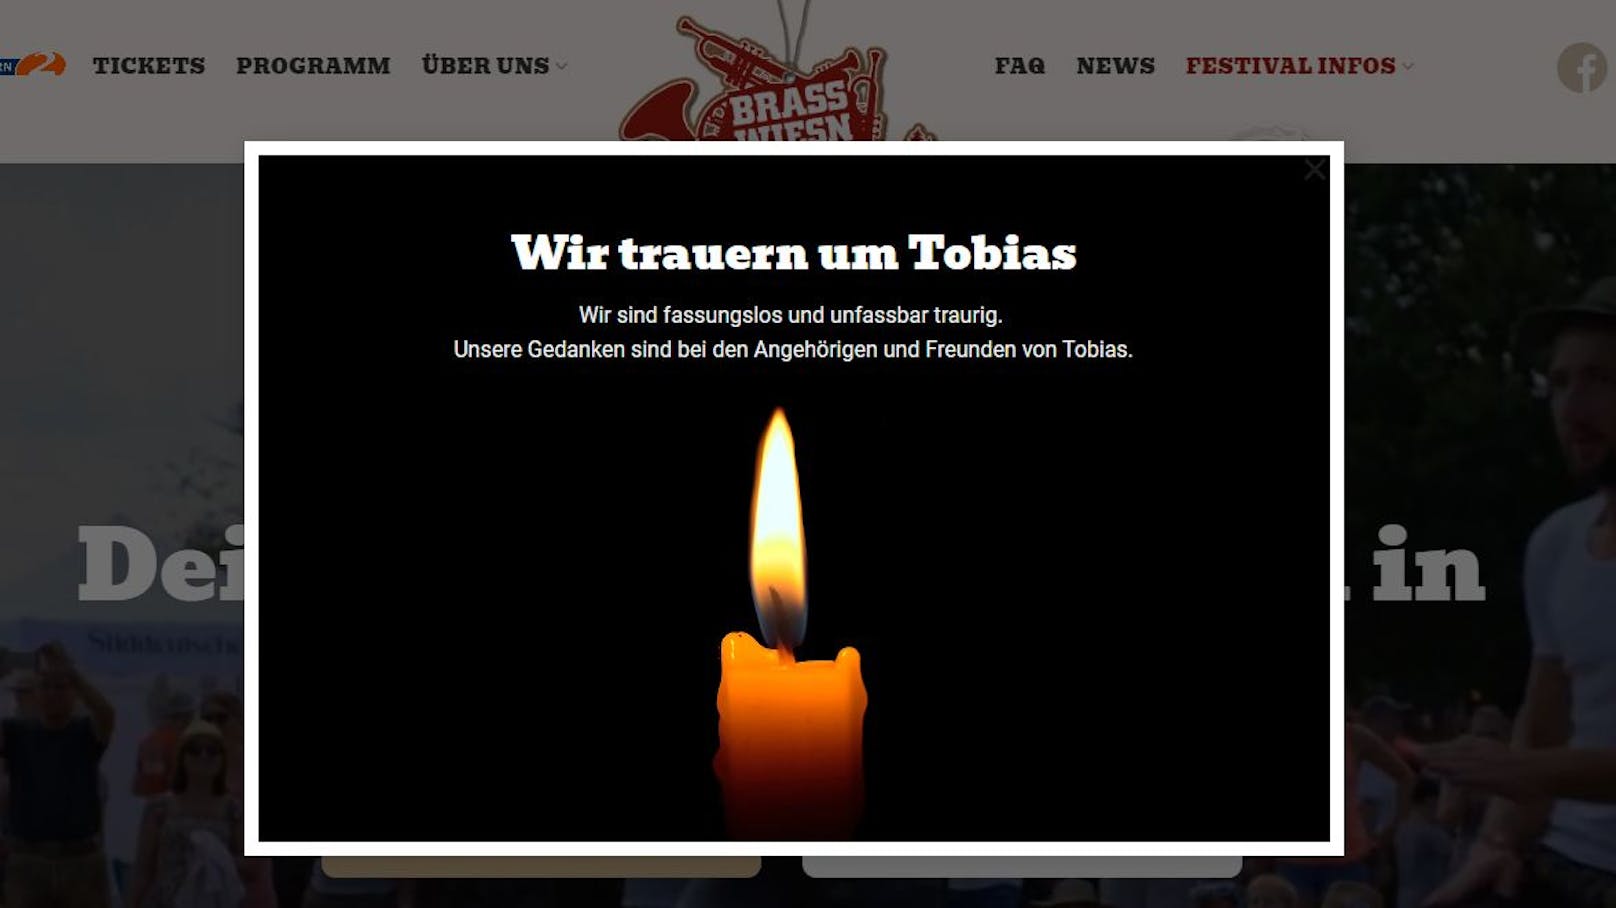 Die Veranstalter des Brass Wiesn Festivals trauern um den verstorbenen Tobias.